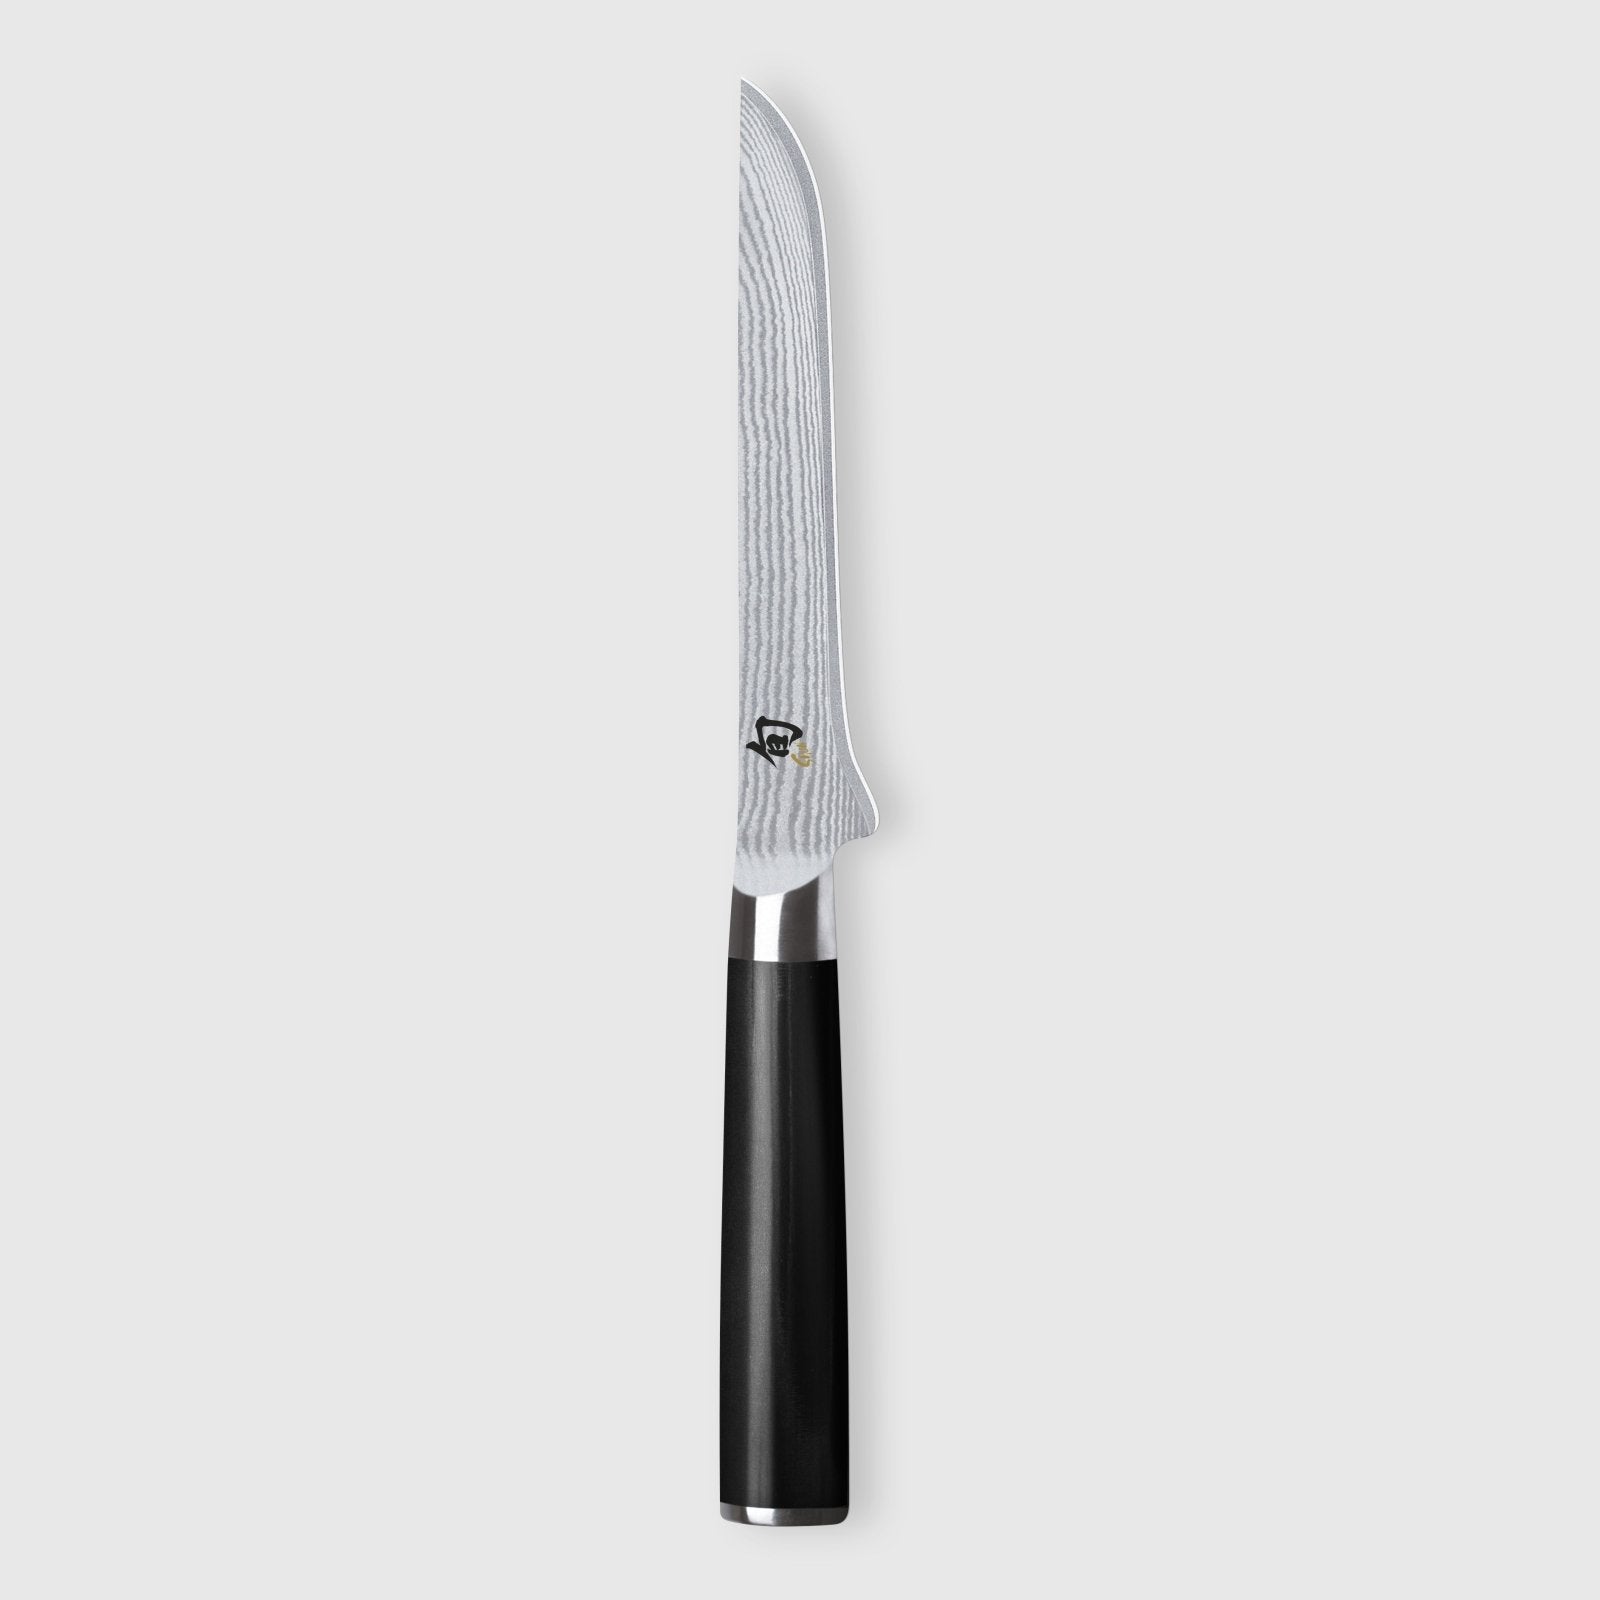 KAI Shun 15cm Boning Knife - KAI-DM-0710 - The Cotswold Knife Company